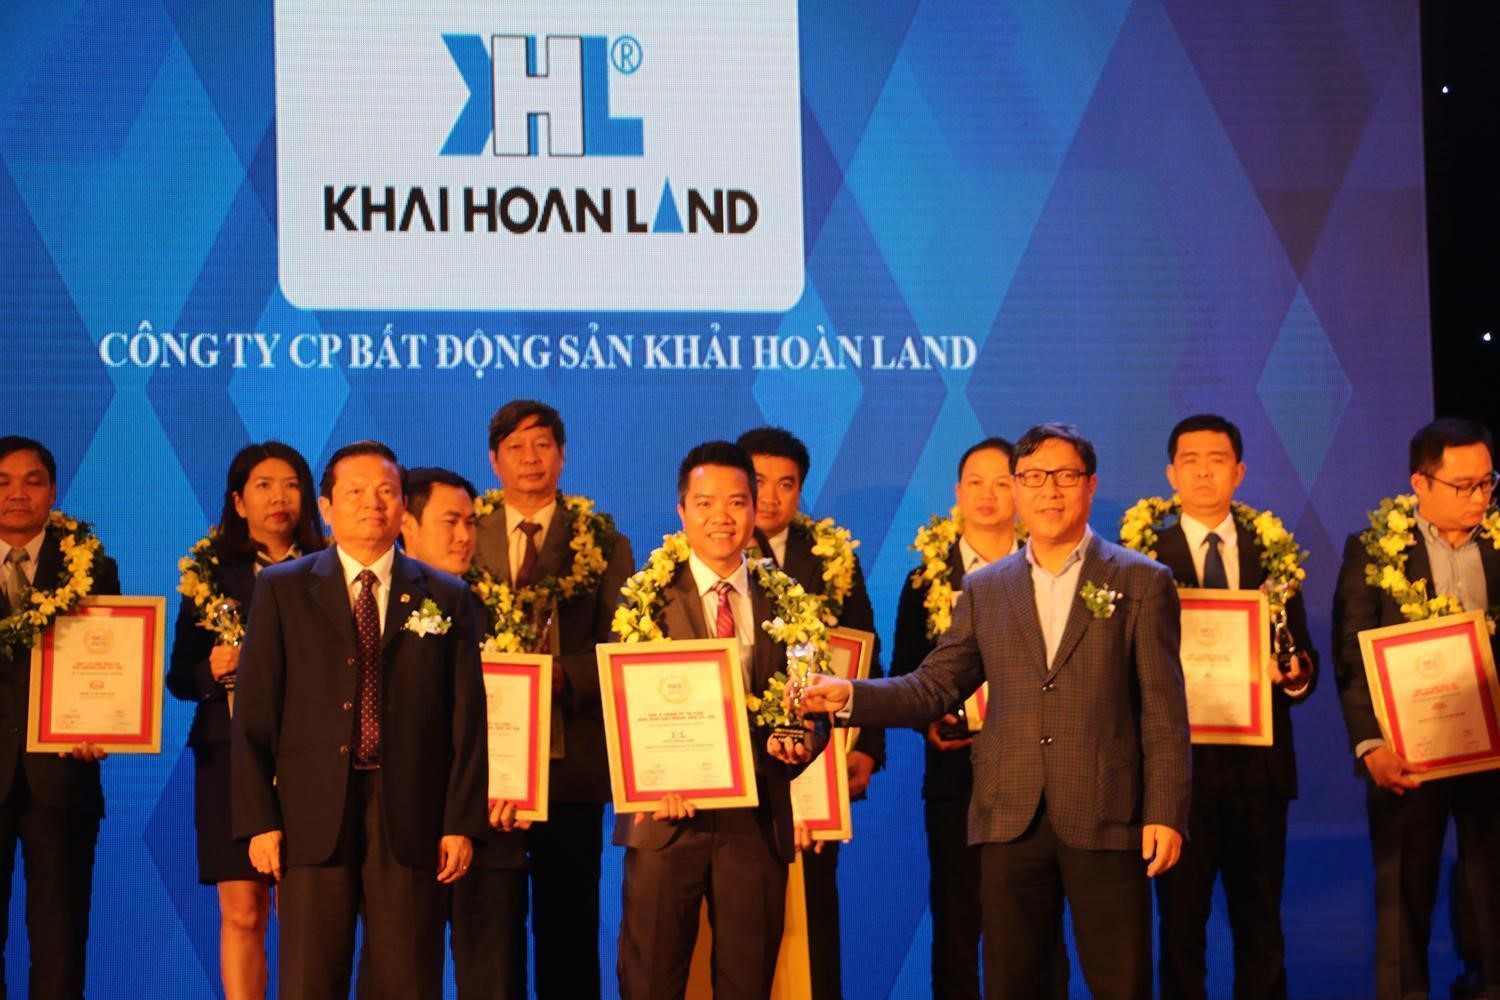 Chủ đầu tư Khải Hoàn Land nhận giải thưởng top 5 doanh nghiệp môi giới nhà đất uy tín nhất.